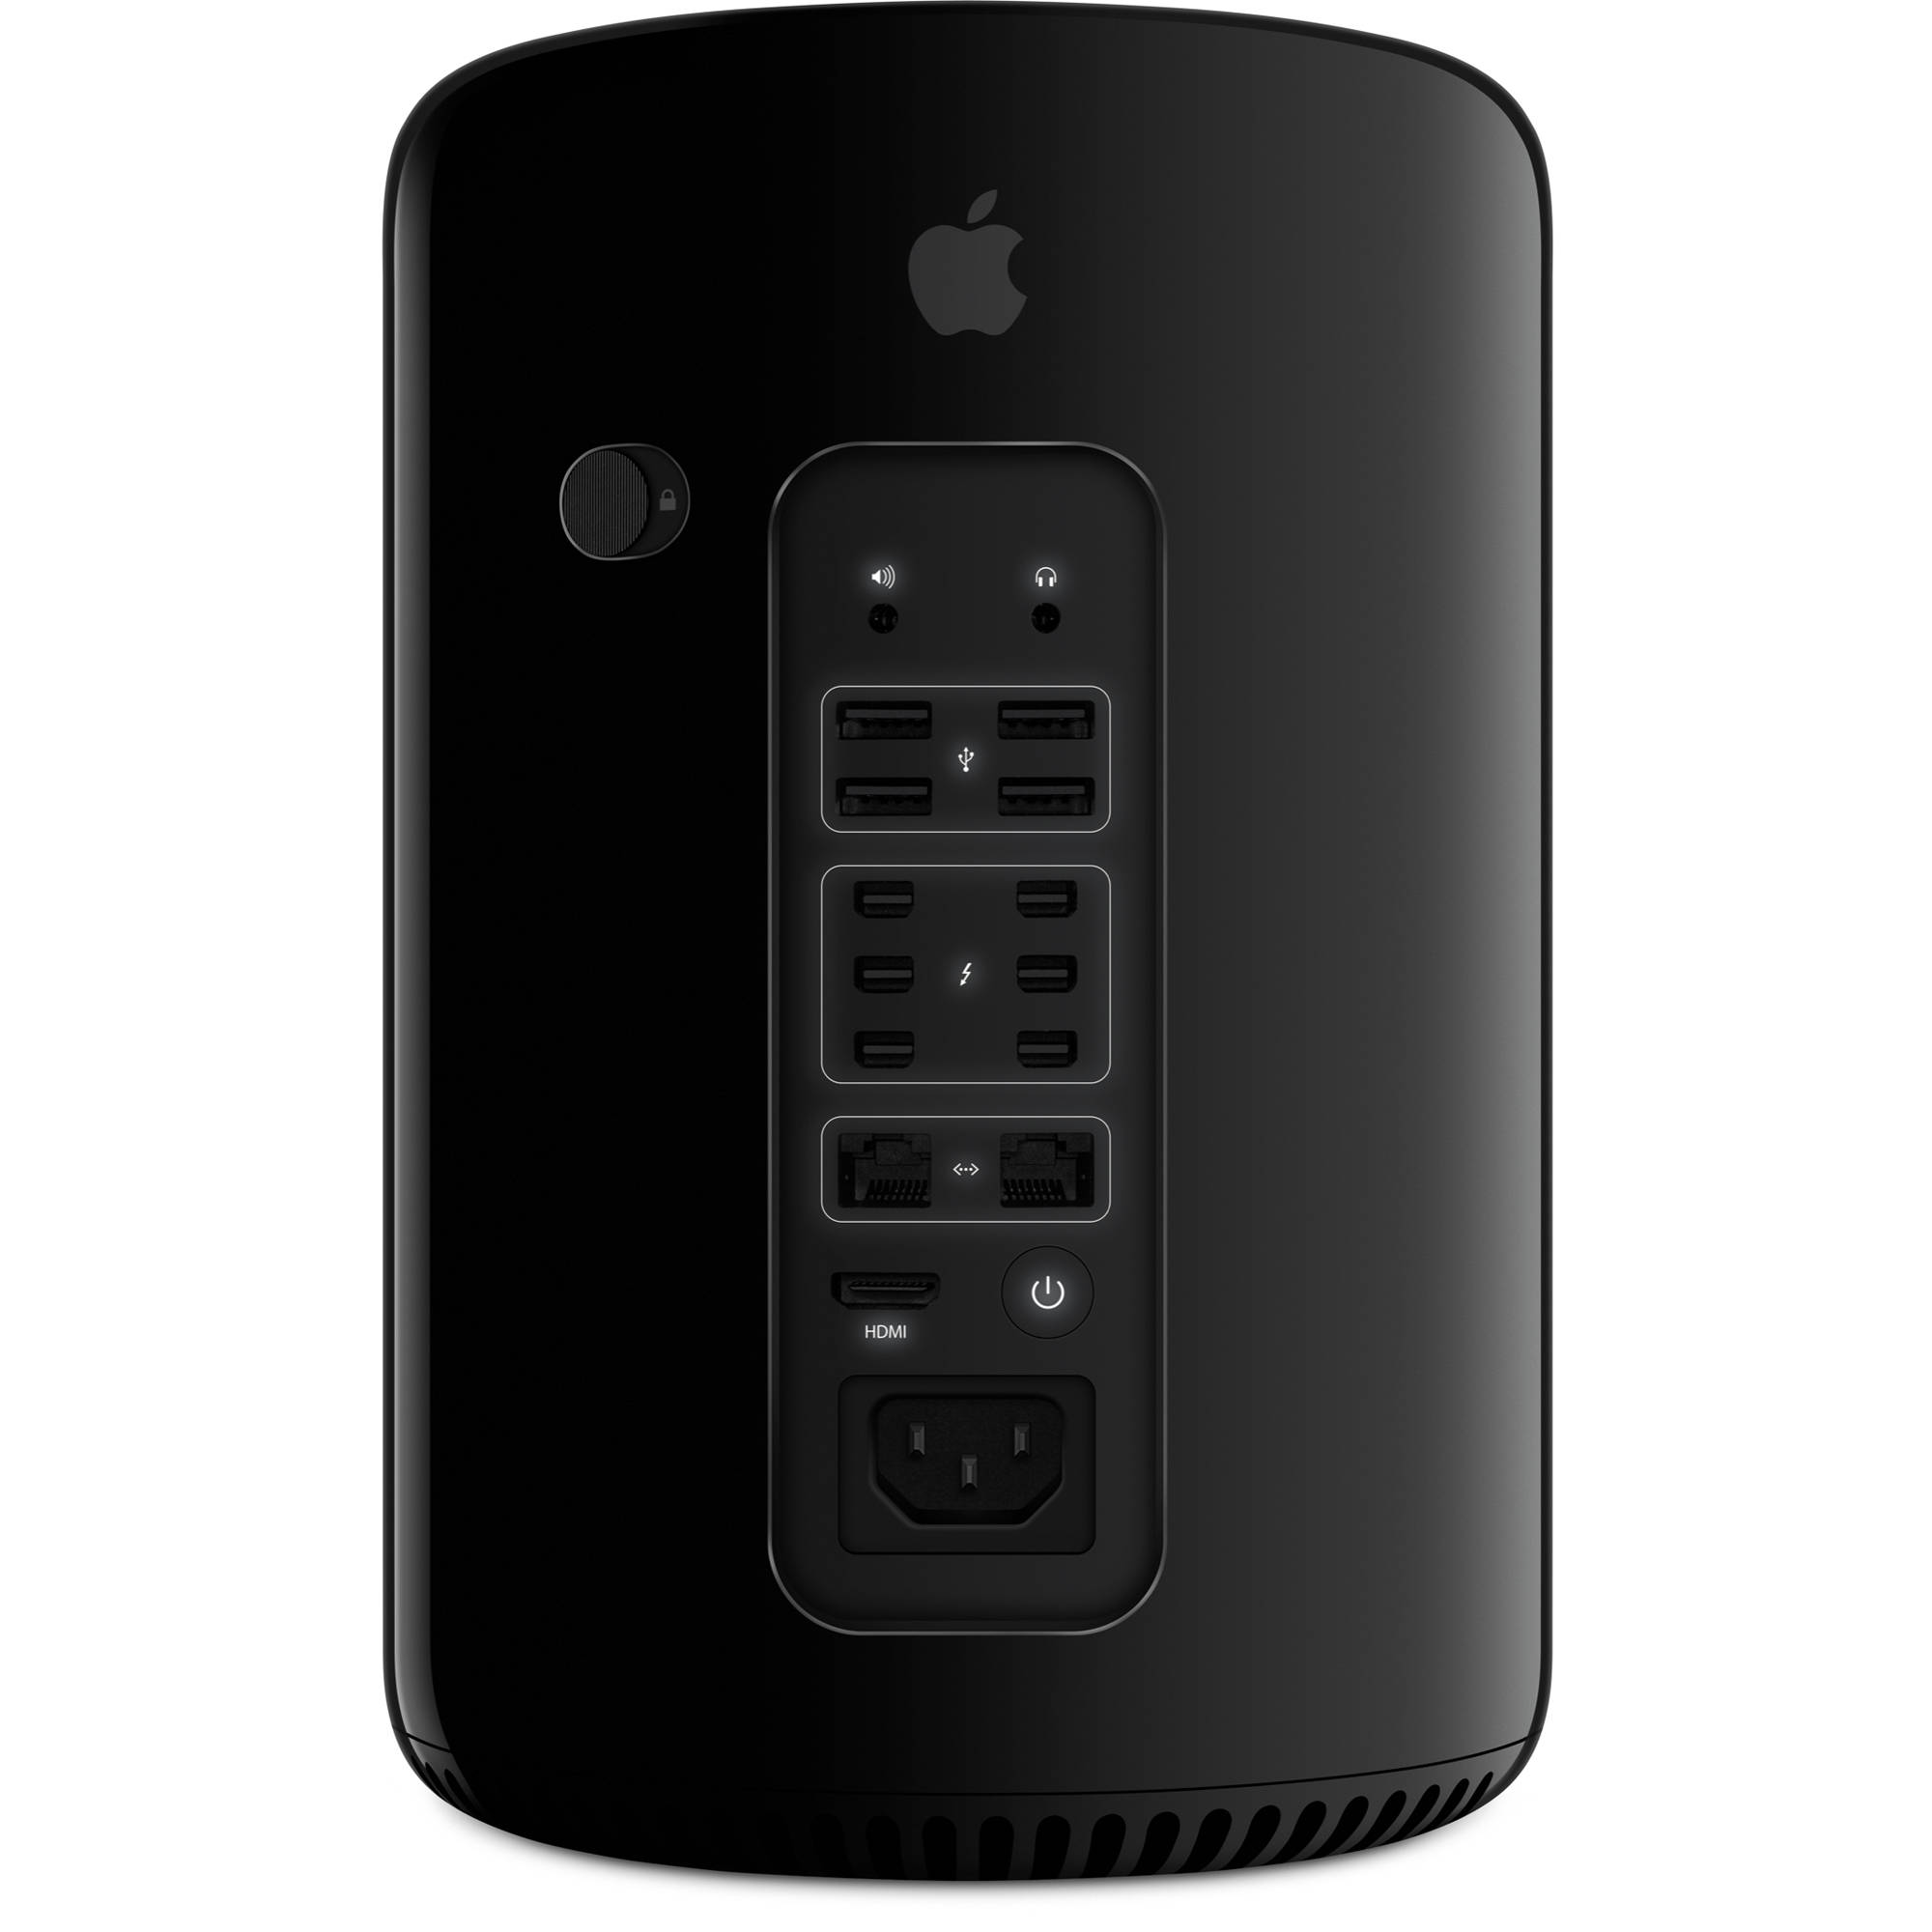 Apple Mac Pro Desktop Computer Quad Core Late 13 Me253ll A